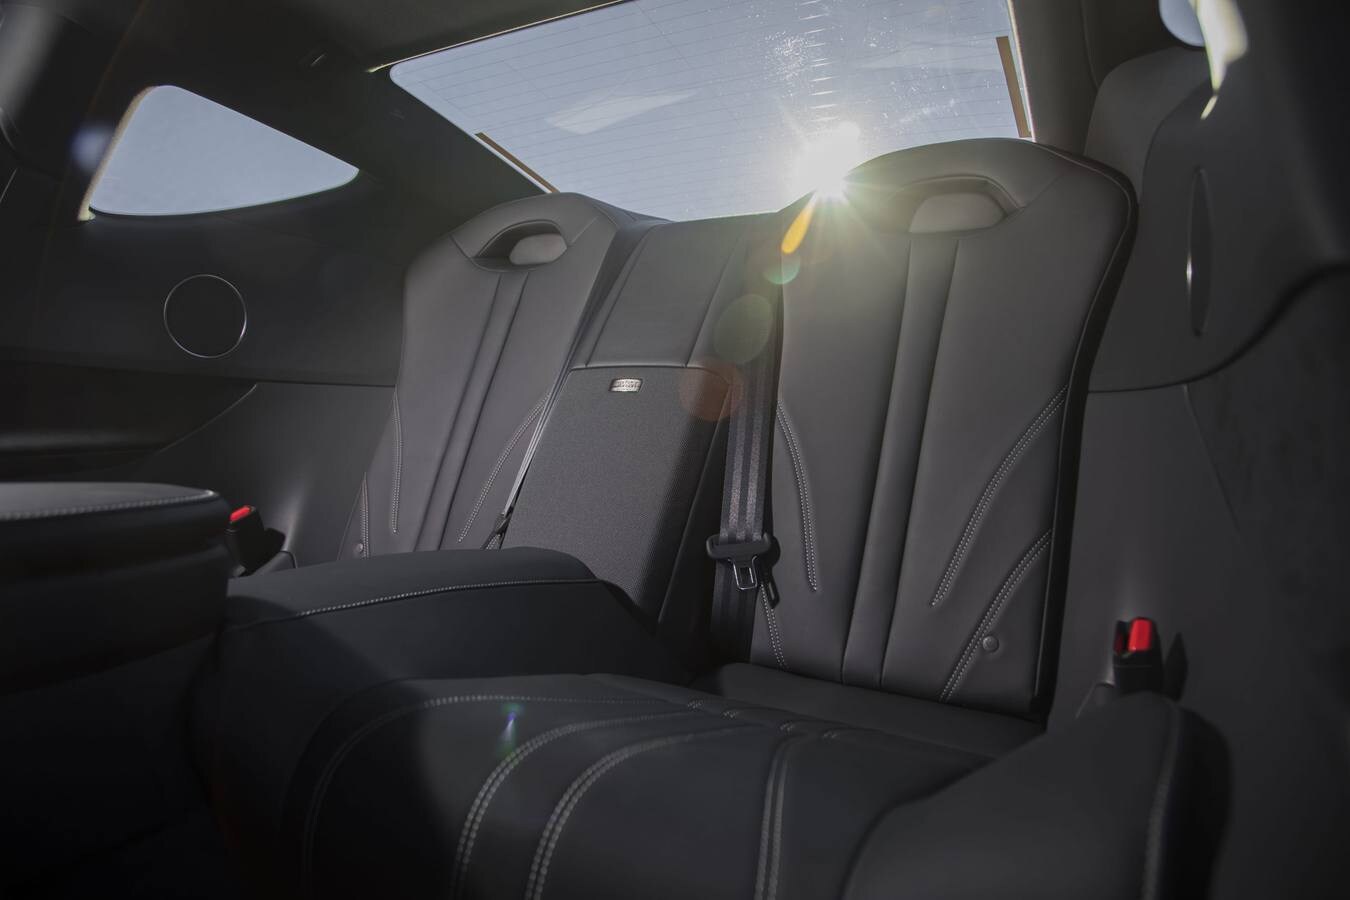 Fotos: Fotos del LC 500h, el cupé más exclusivo de Lexus